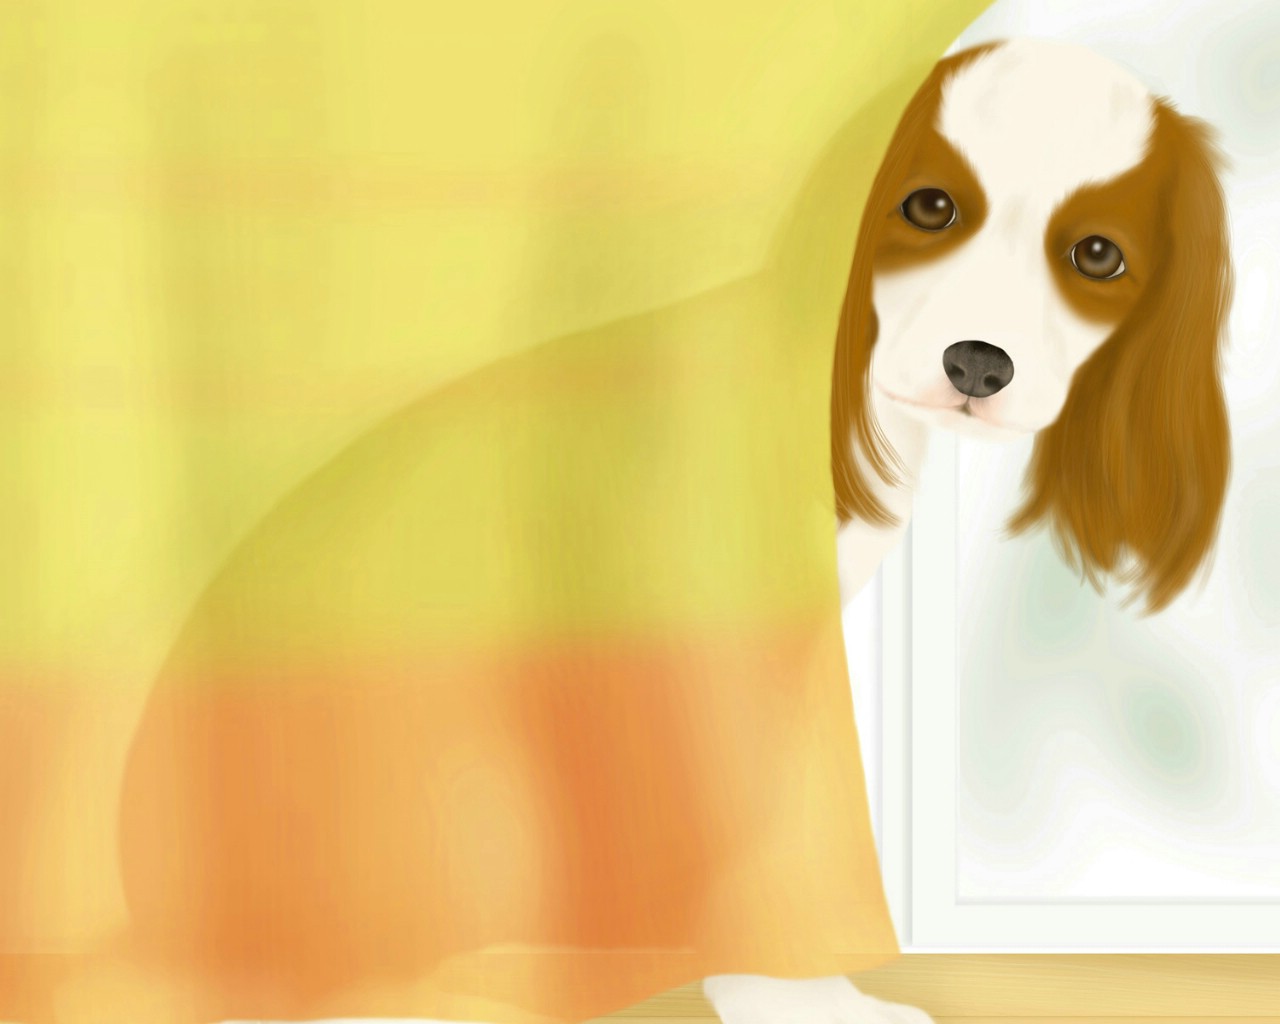 壁纸1280x1024 宠物狗狗的插画图片壁纸 Painter 柔和插画-我的宠物狗壁纸 Painter 柔和插画-我的宠物狗图片 Painter 柔和插画-我的宠物狗素材 动物壁纸 动物图库 动物图片素材桌面壁纸